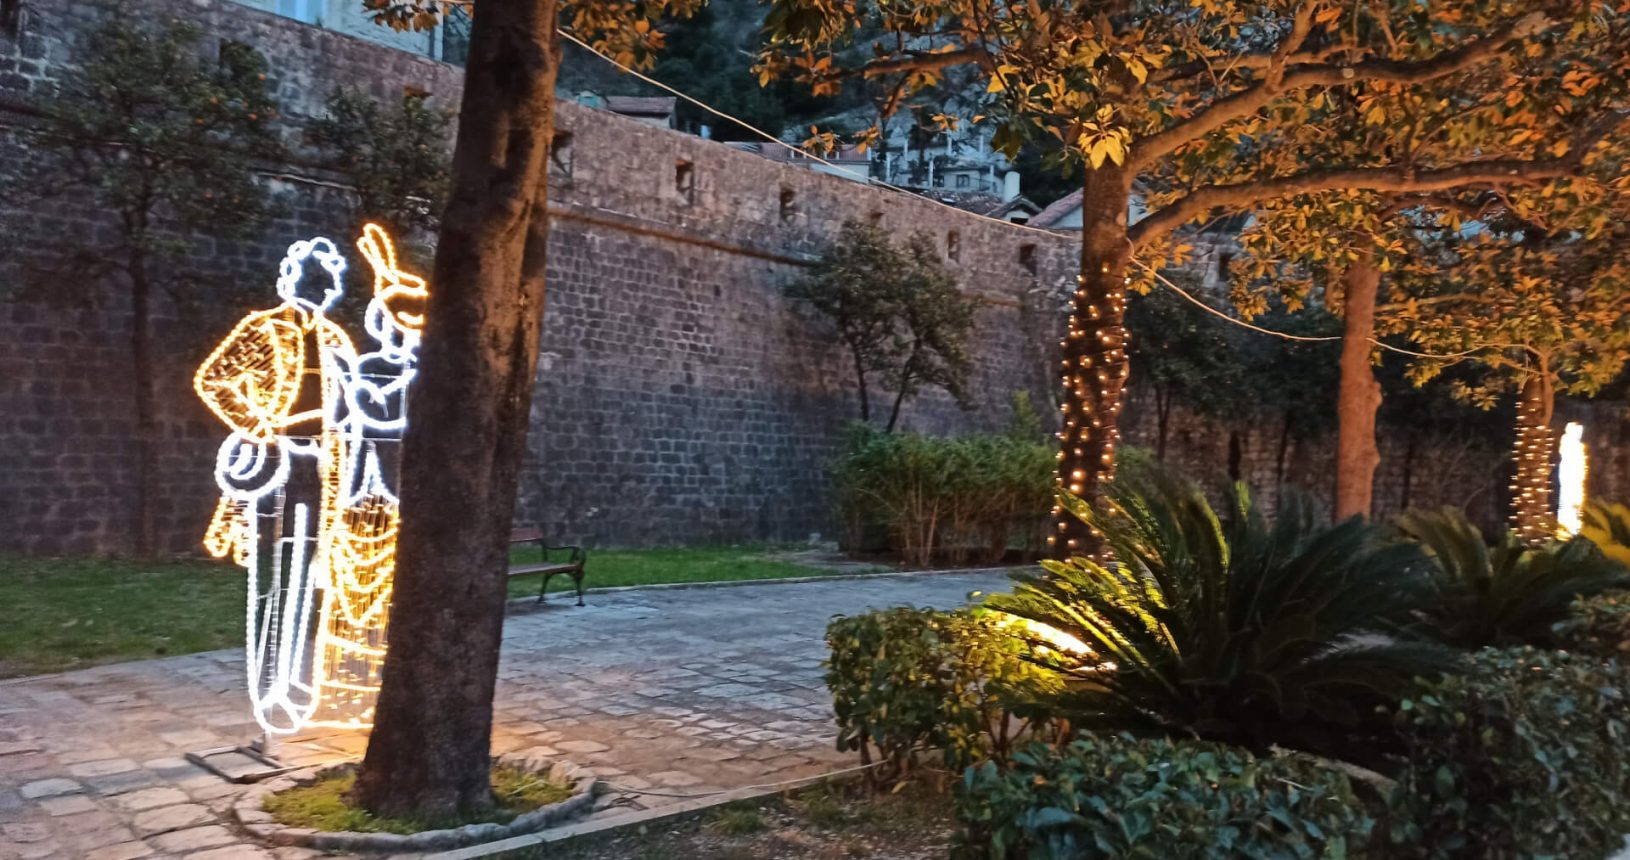 Kotor wall at night